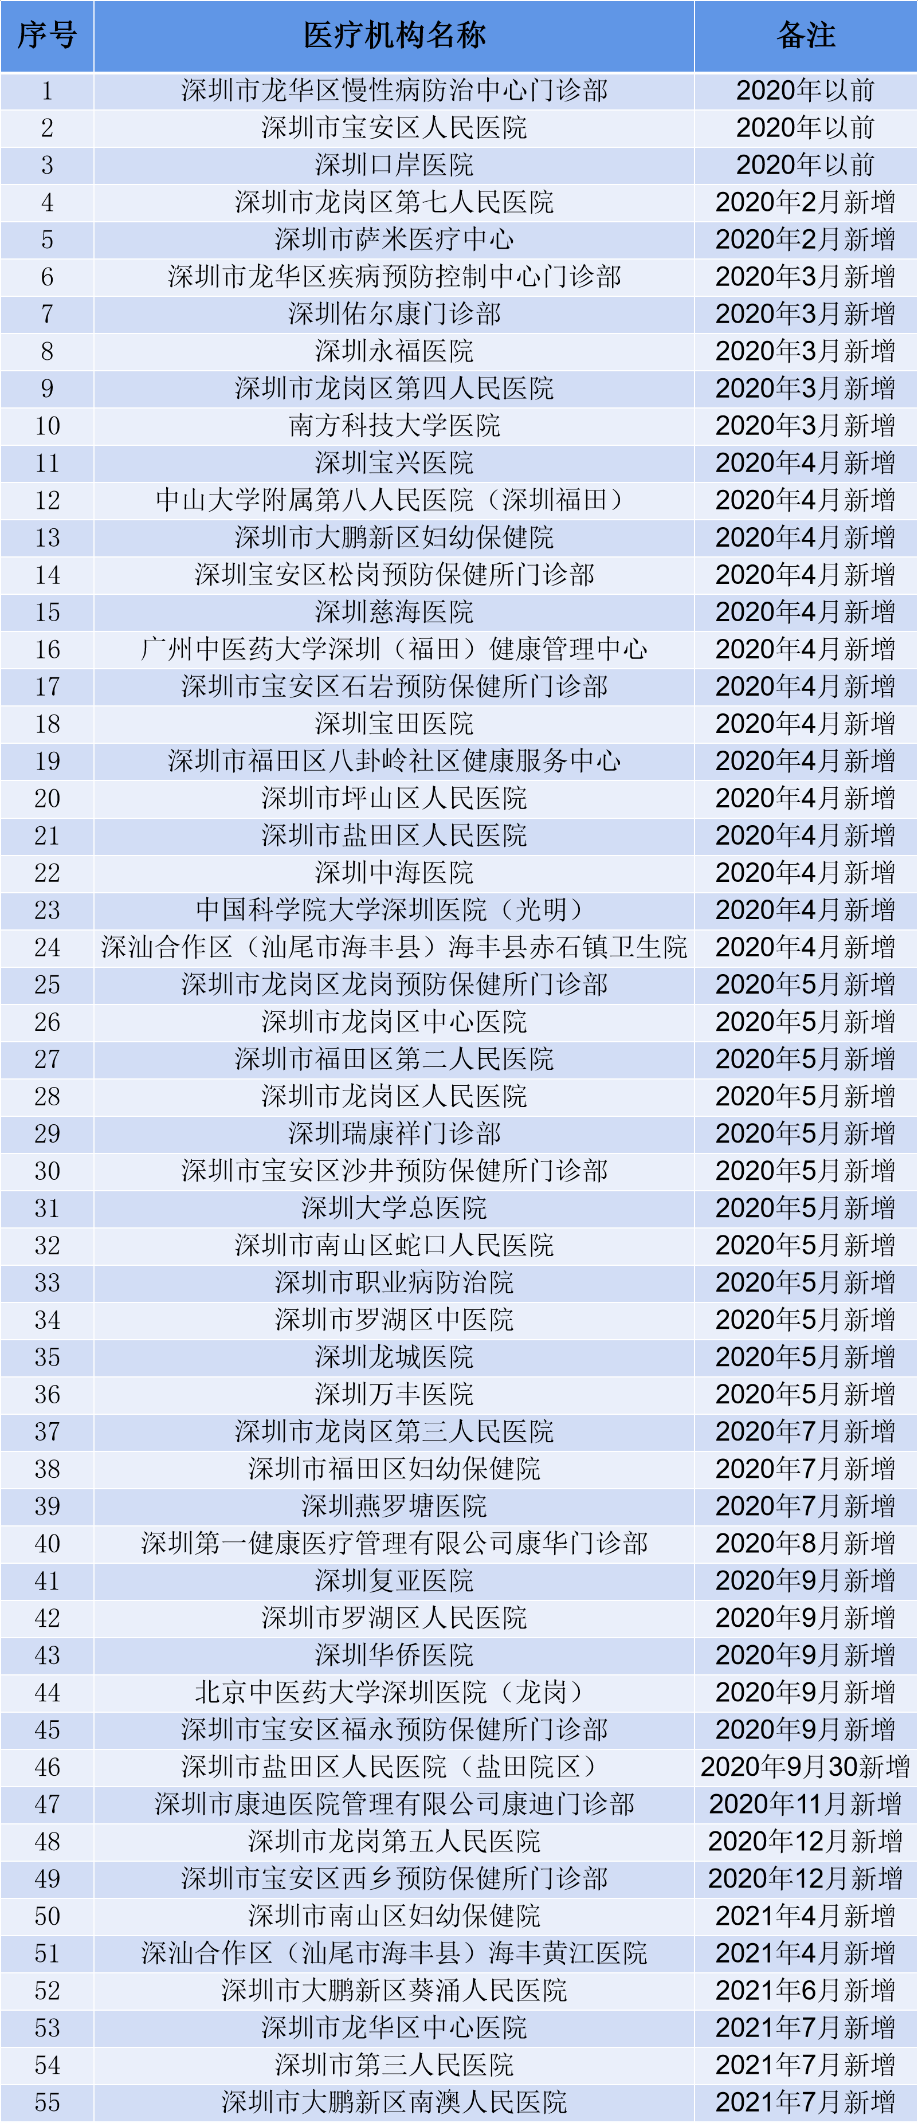 深圳再增3家健康检查机构 要办健康证找这55家医疗机构就对了